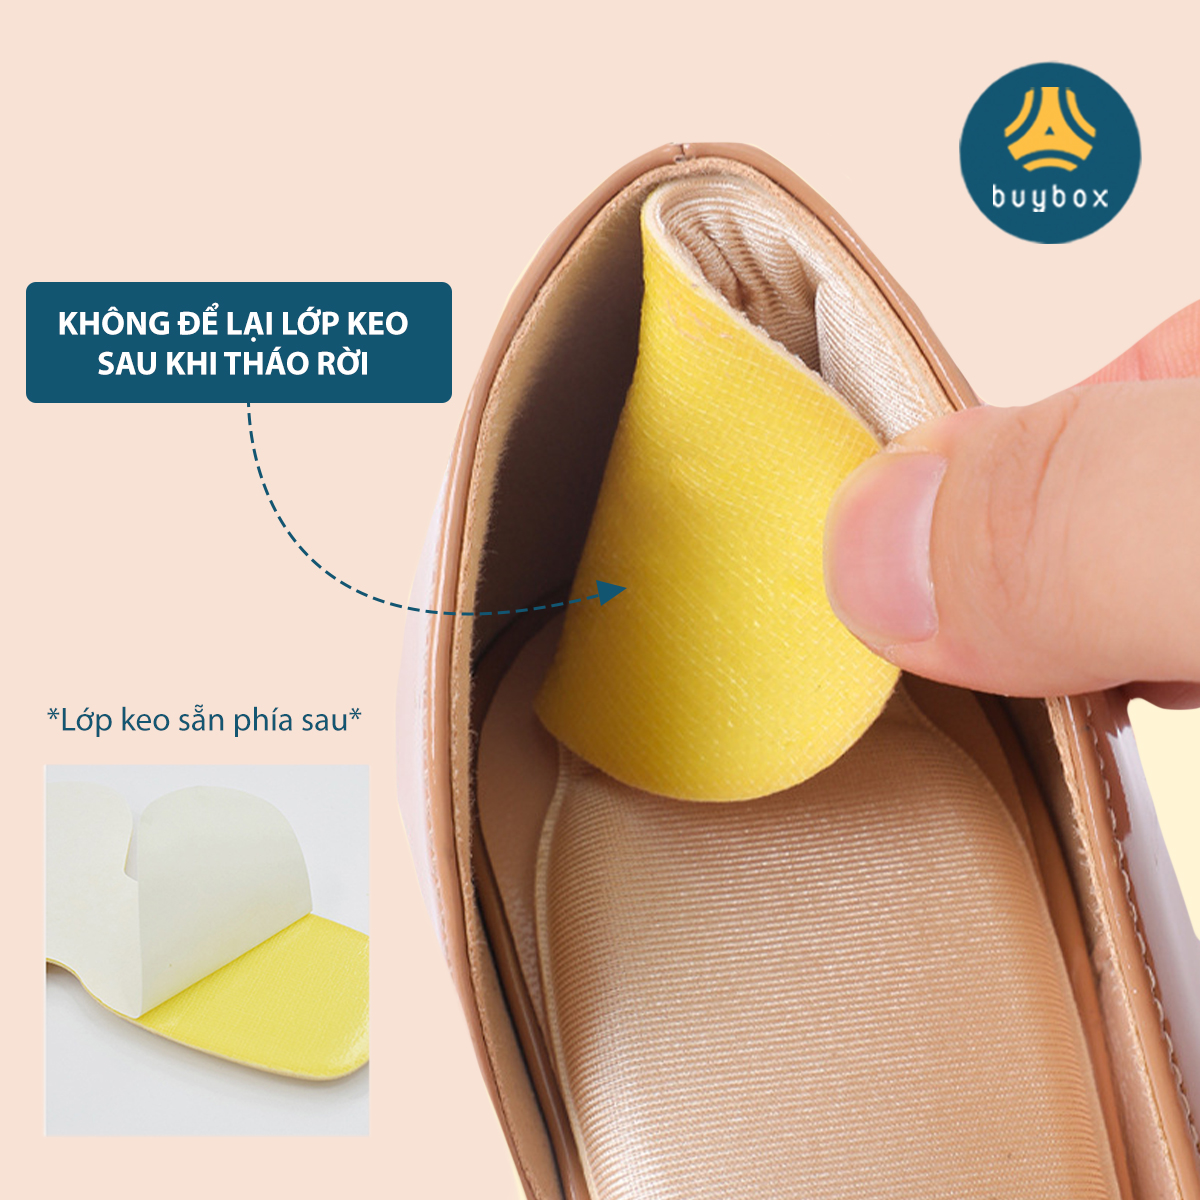 Lót giày bảo vệ gót chân 2 trong 1 chống trầy da và chống thốn gót thiết kế kiểu vỏ sò ôm trọn gót chân - Buybox - BBPK274